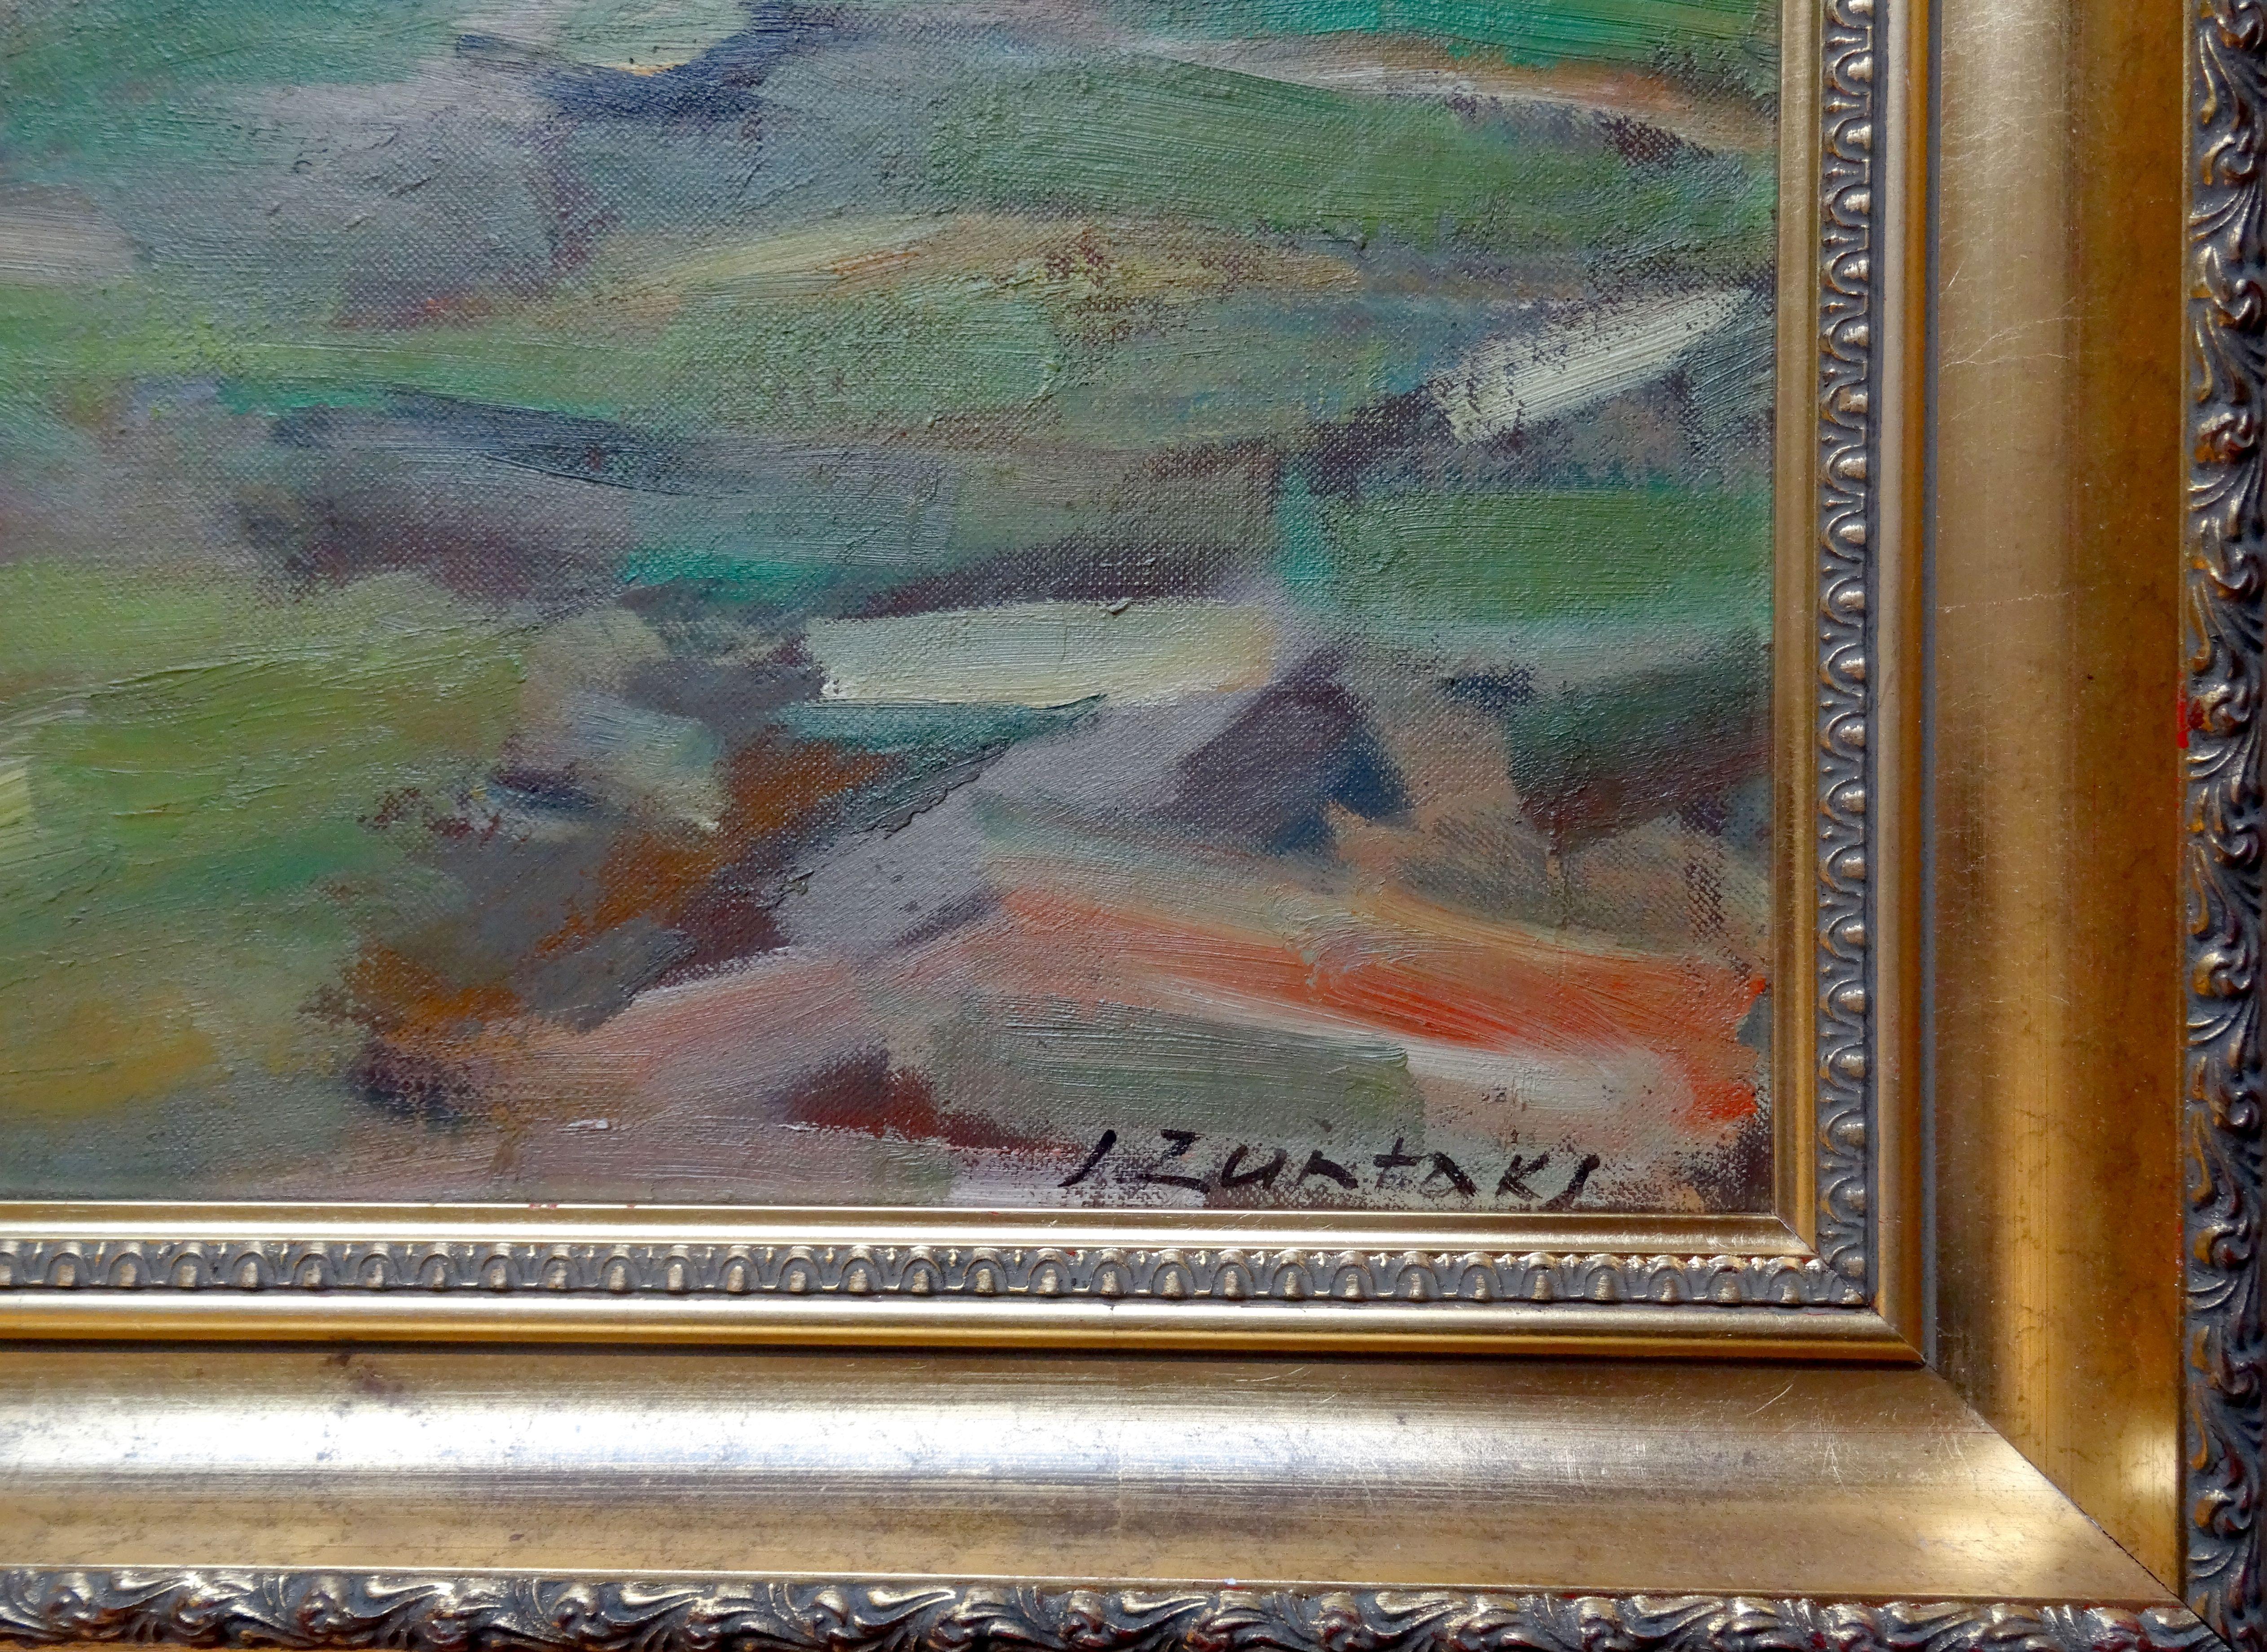 Am Fluss. Leinwand, Karton, Öl, 55,5x70,5 cm (Impressionismus), Painting, von Janis Rudolfs Zuntaks